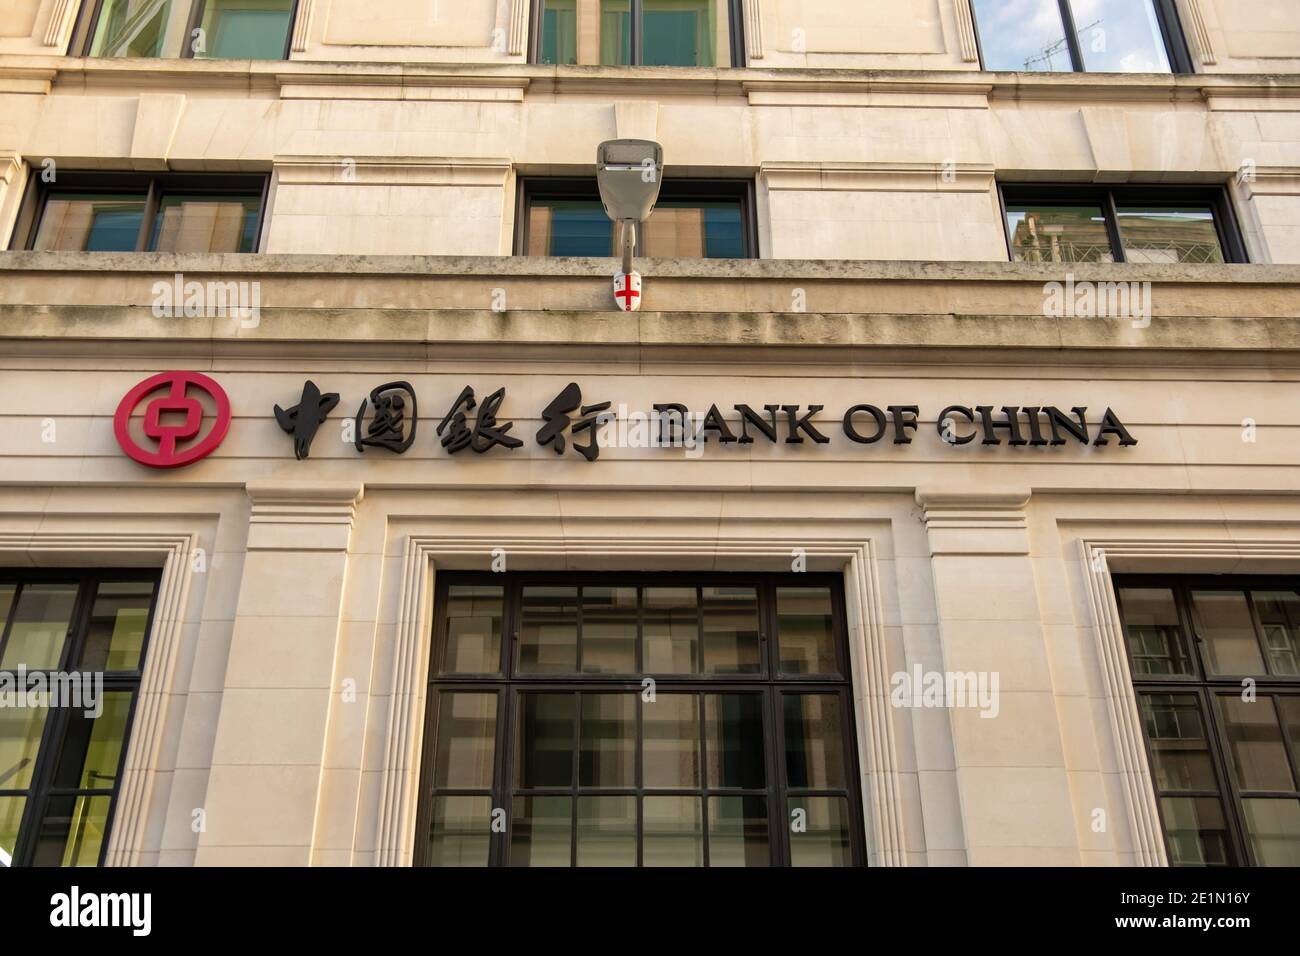 LONDRA- segnaletica esterna della Banca della Cina- filiale londinese della Banca commerciale statale cinese Foto Stock